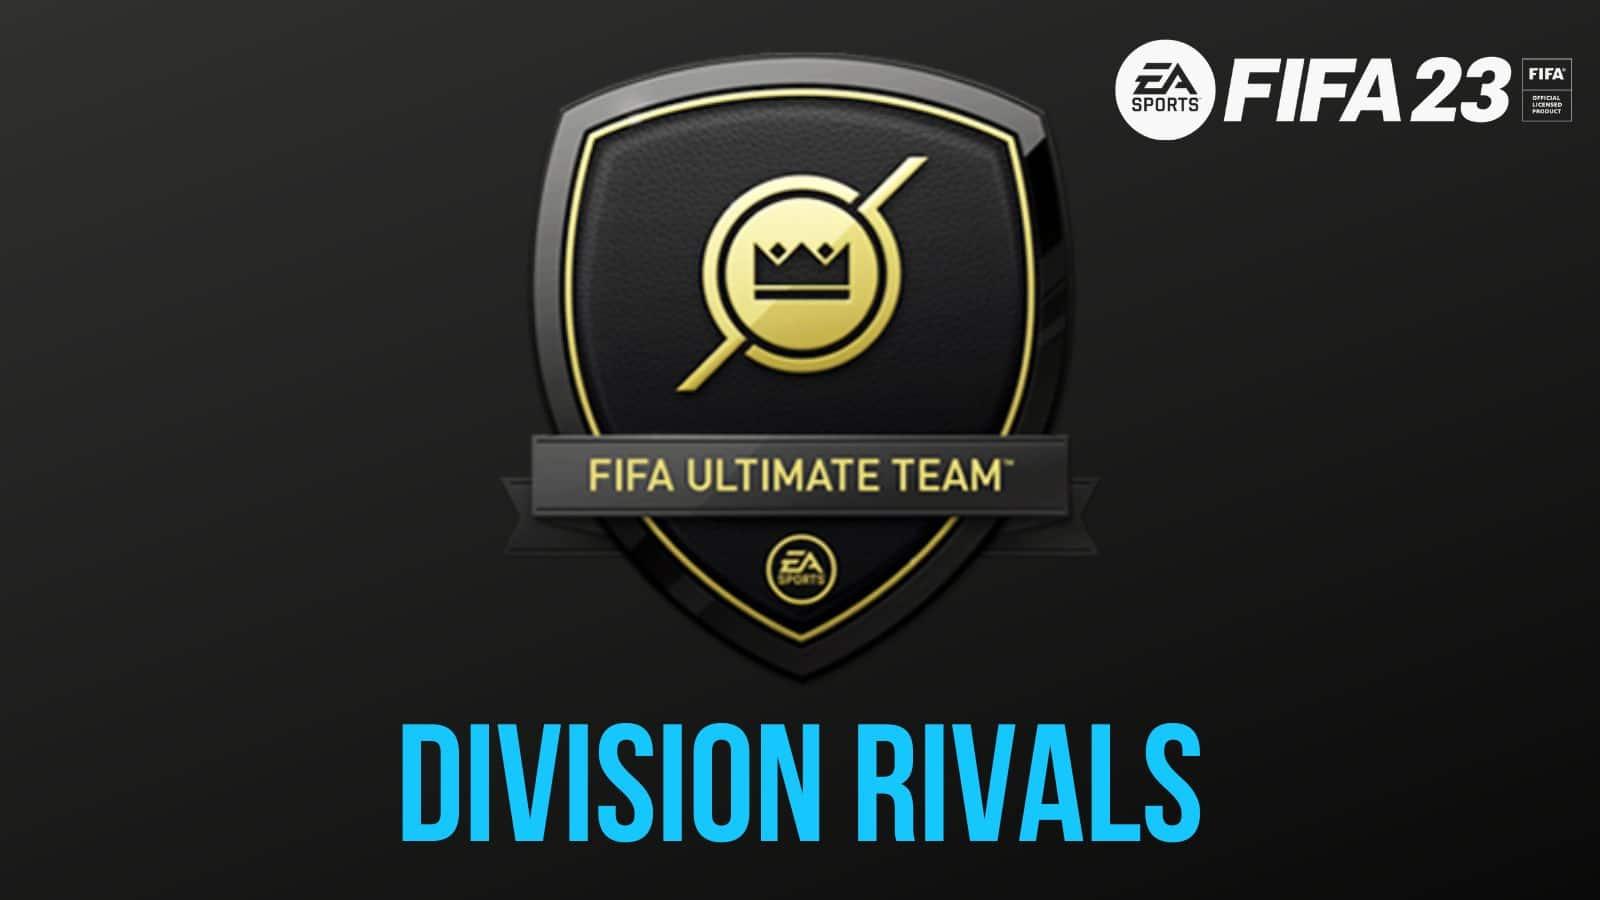 Os novos Icons do Ultimate Team no FIFA 23: quem são e seus ratings